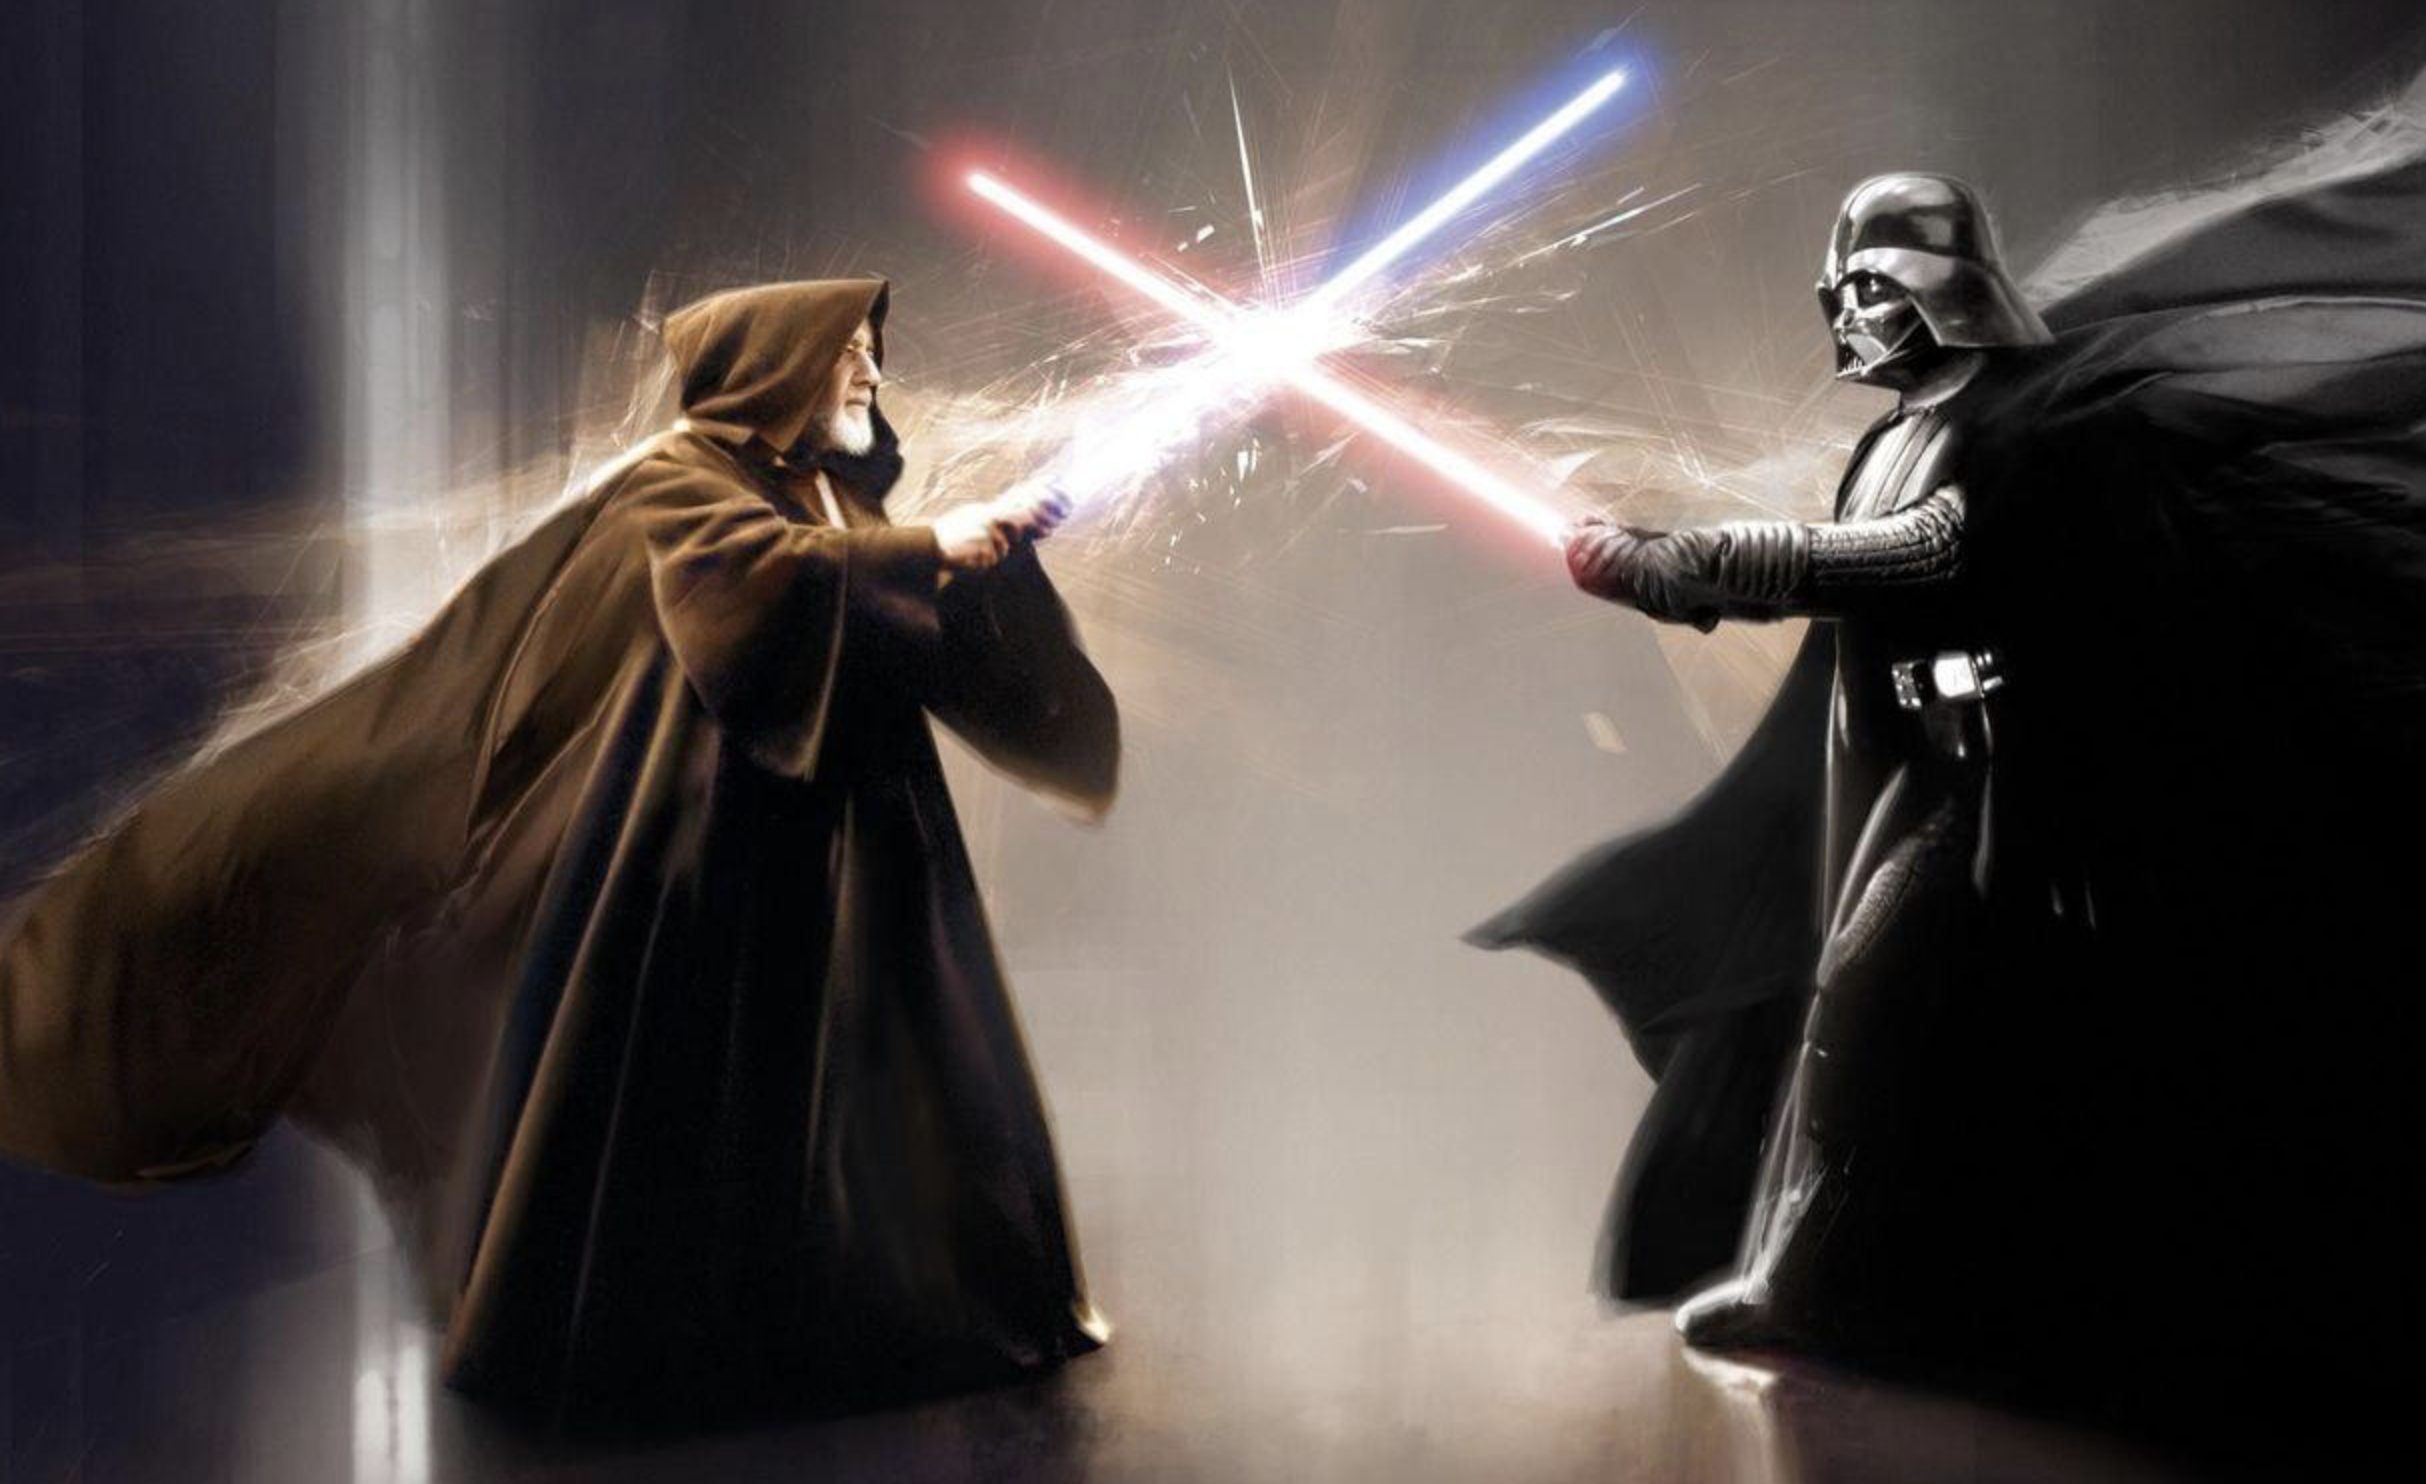 Obi-Wan Kenobi vs Darth Vader